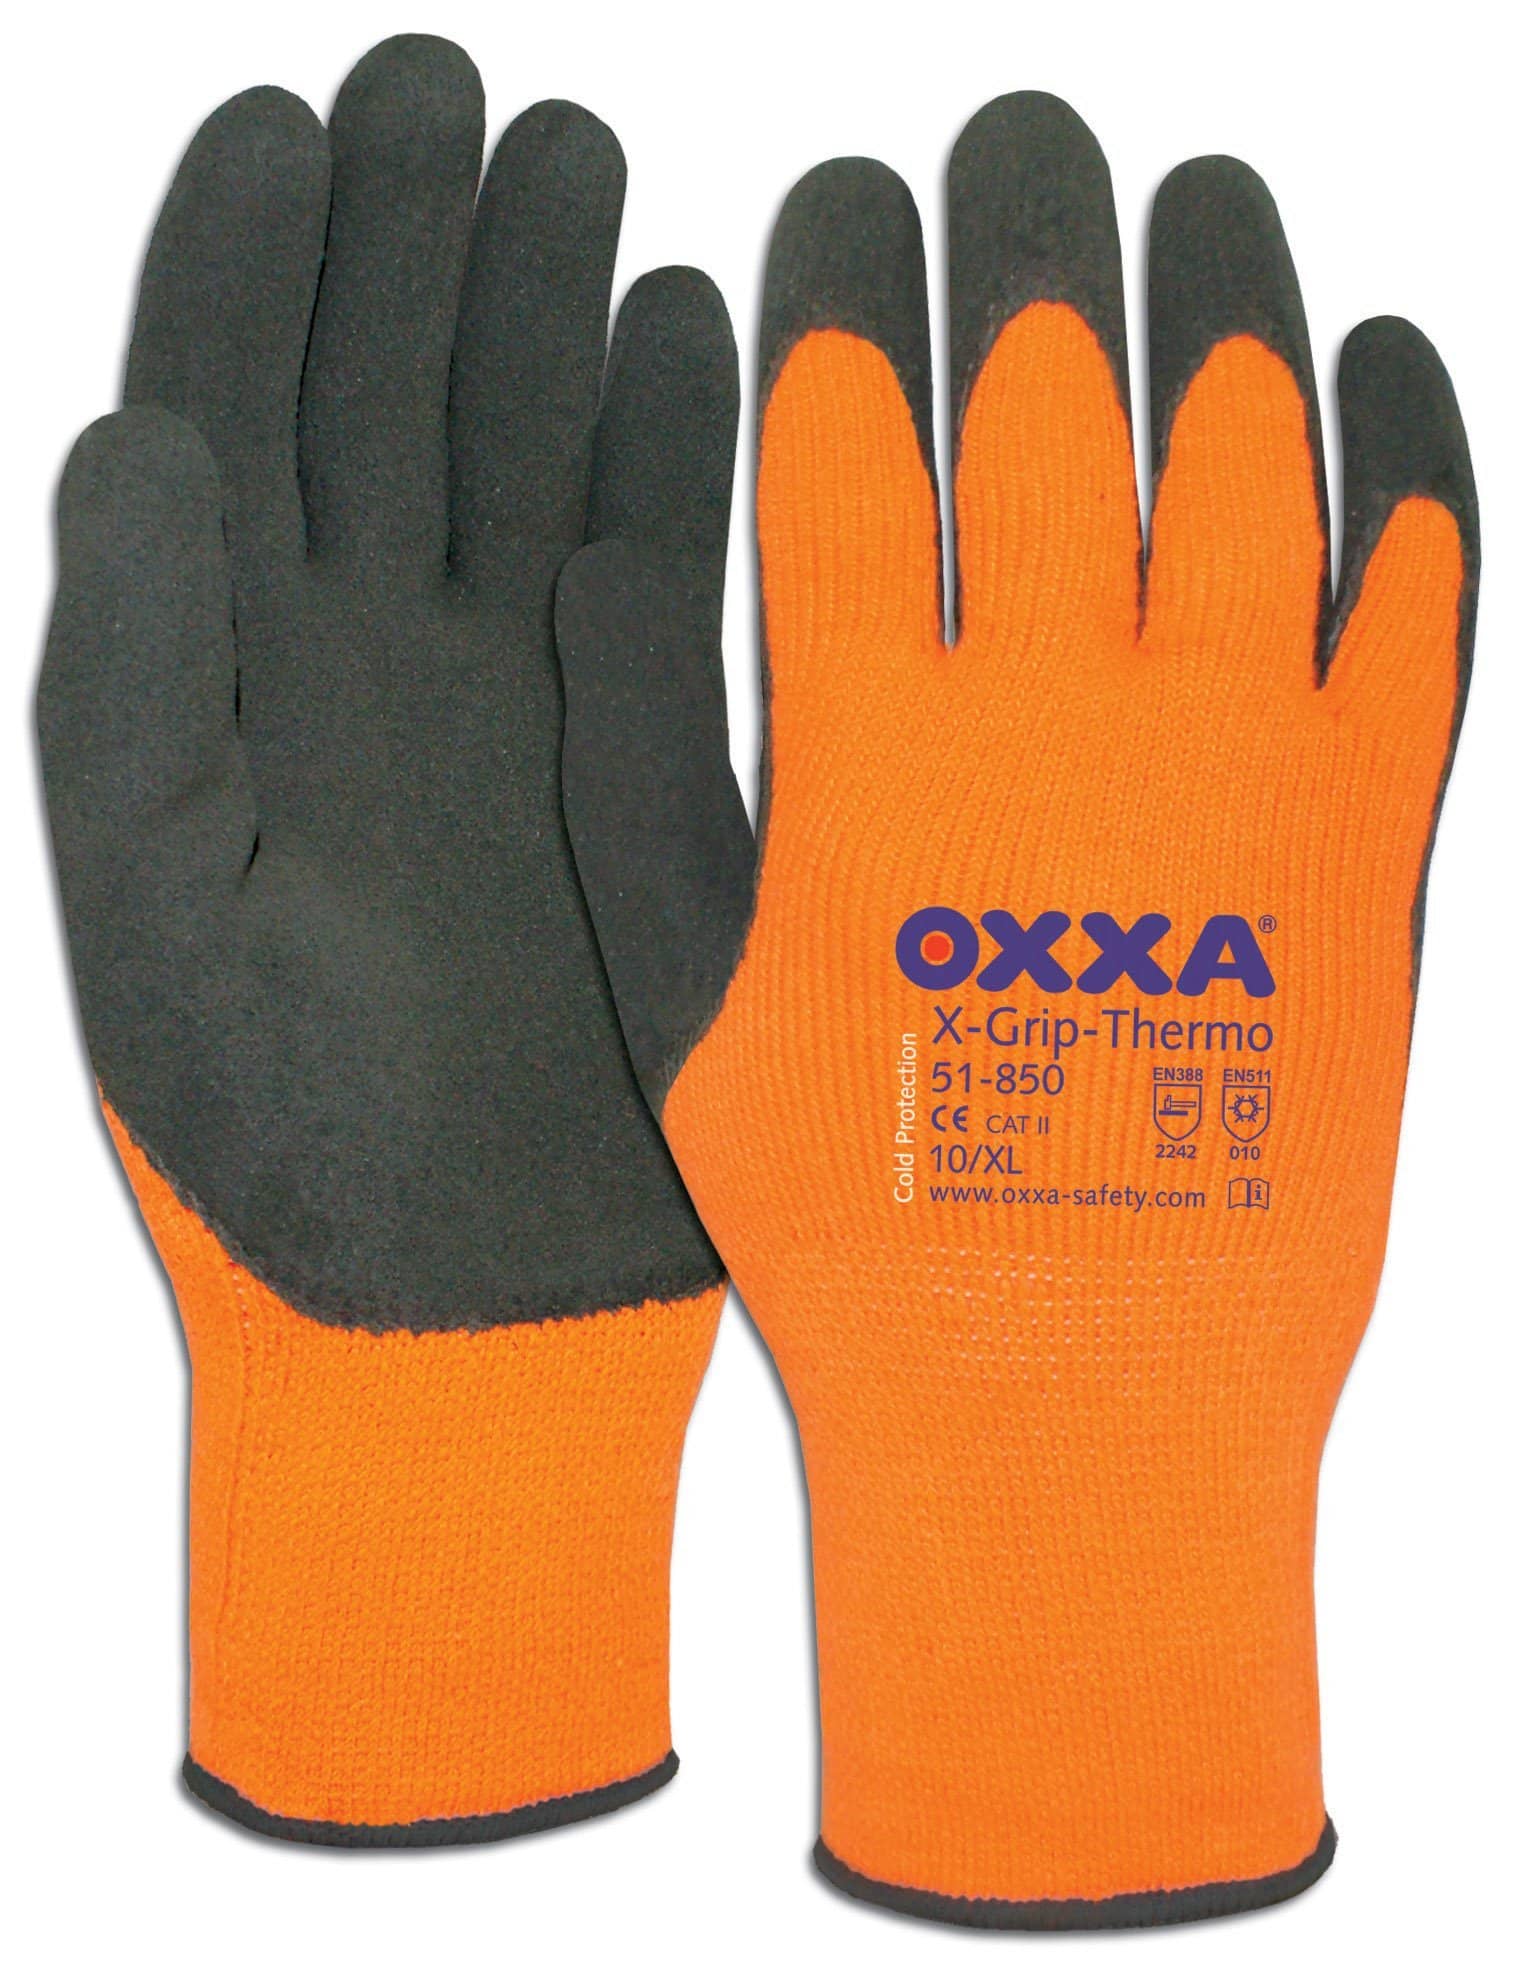 Oxxa X-Grip-Thermo 51-850 handschoenen - 12 paar